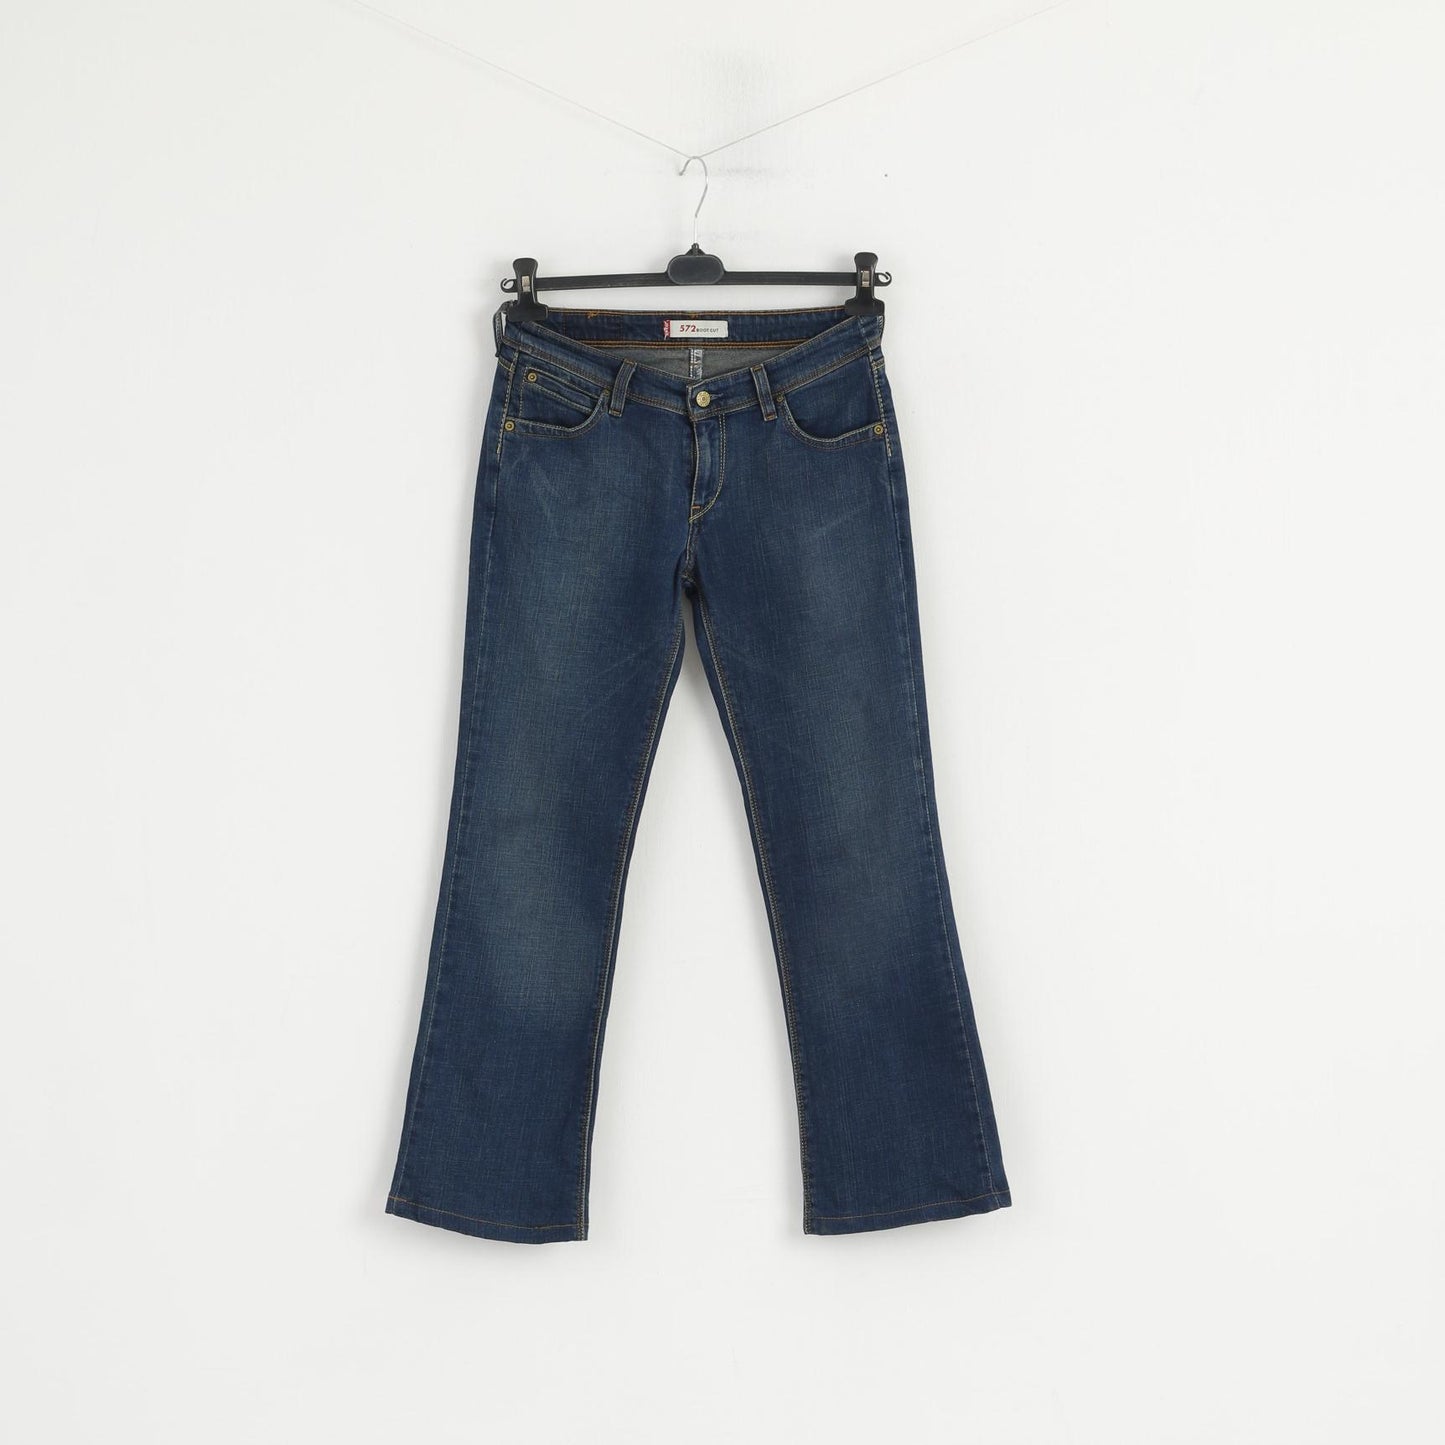 Levi's Women 30 Jeans Trousers Navy Cotton 572 Bootcut Denim Pants